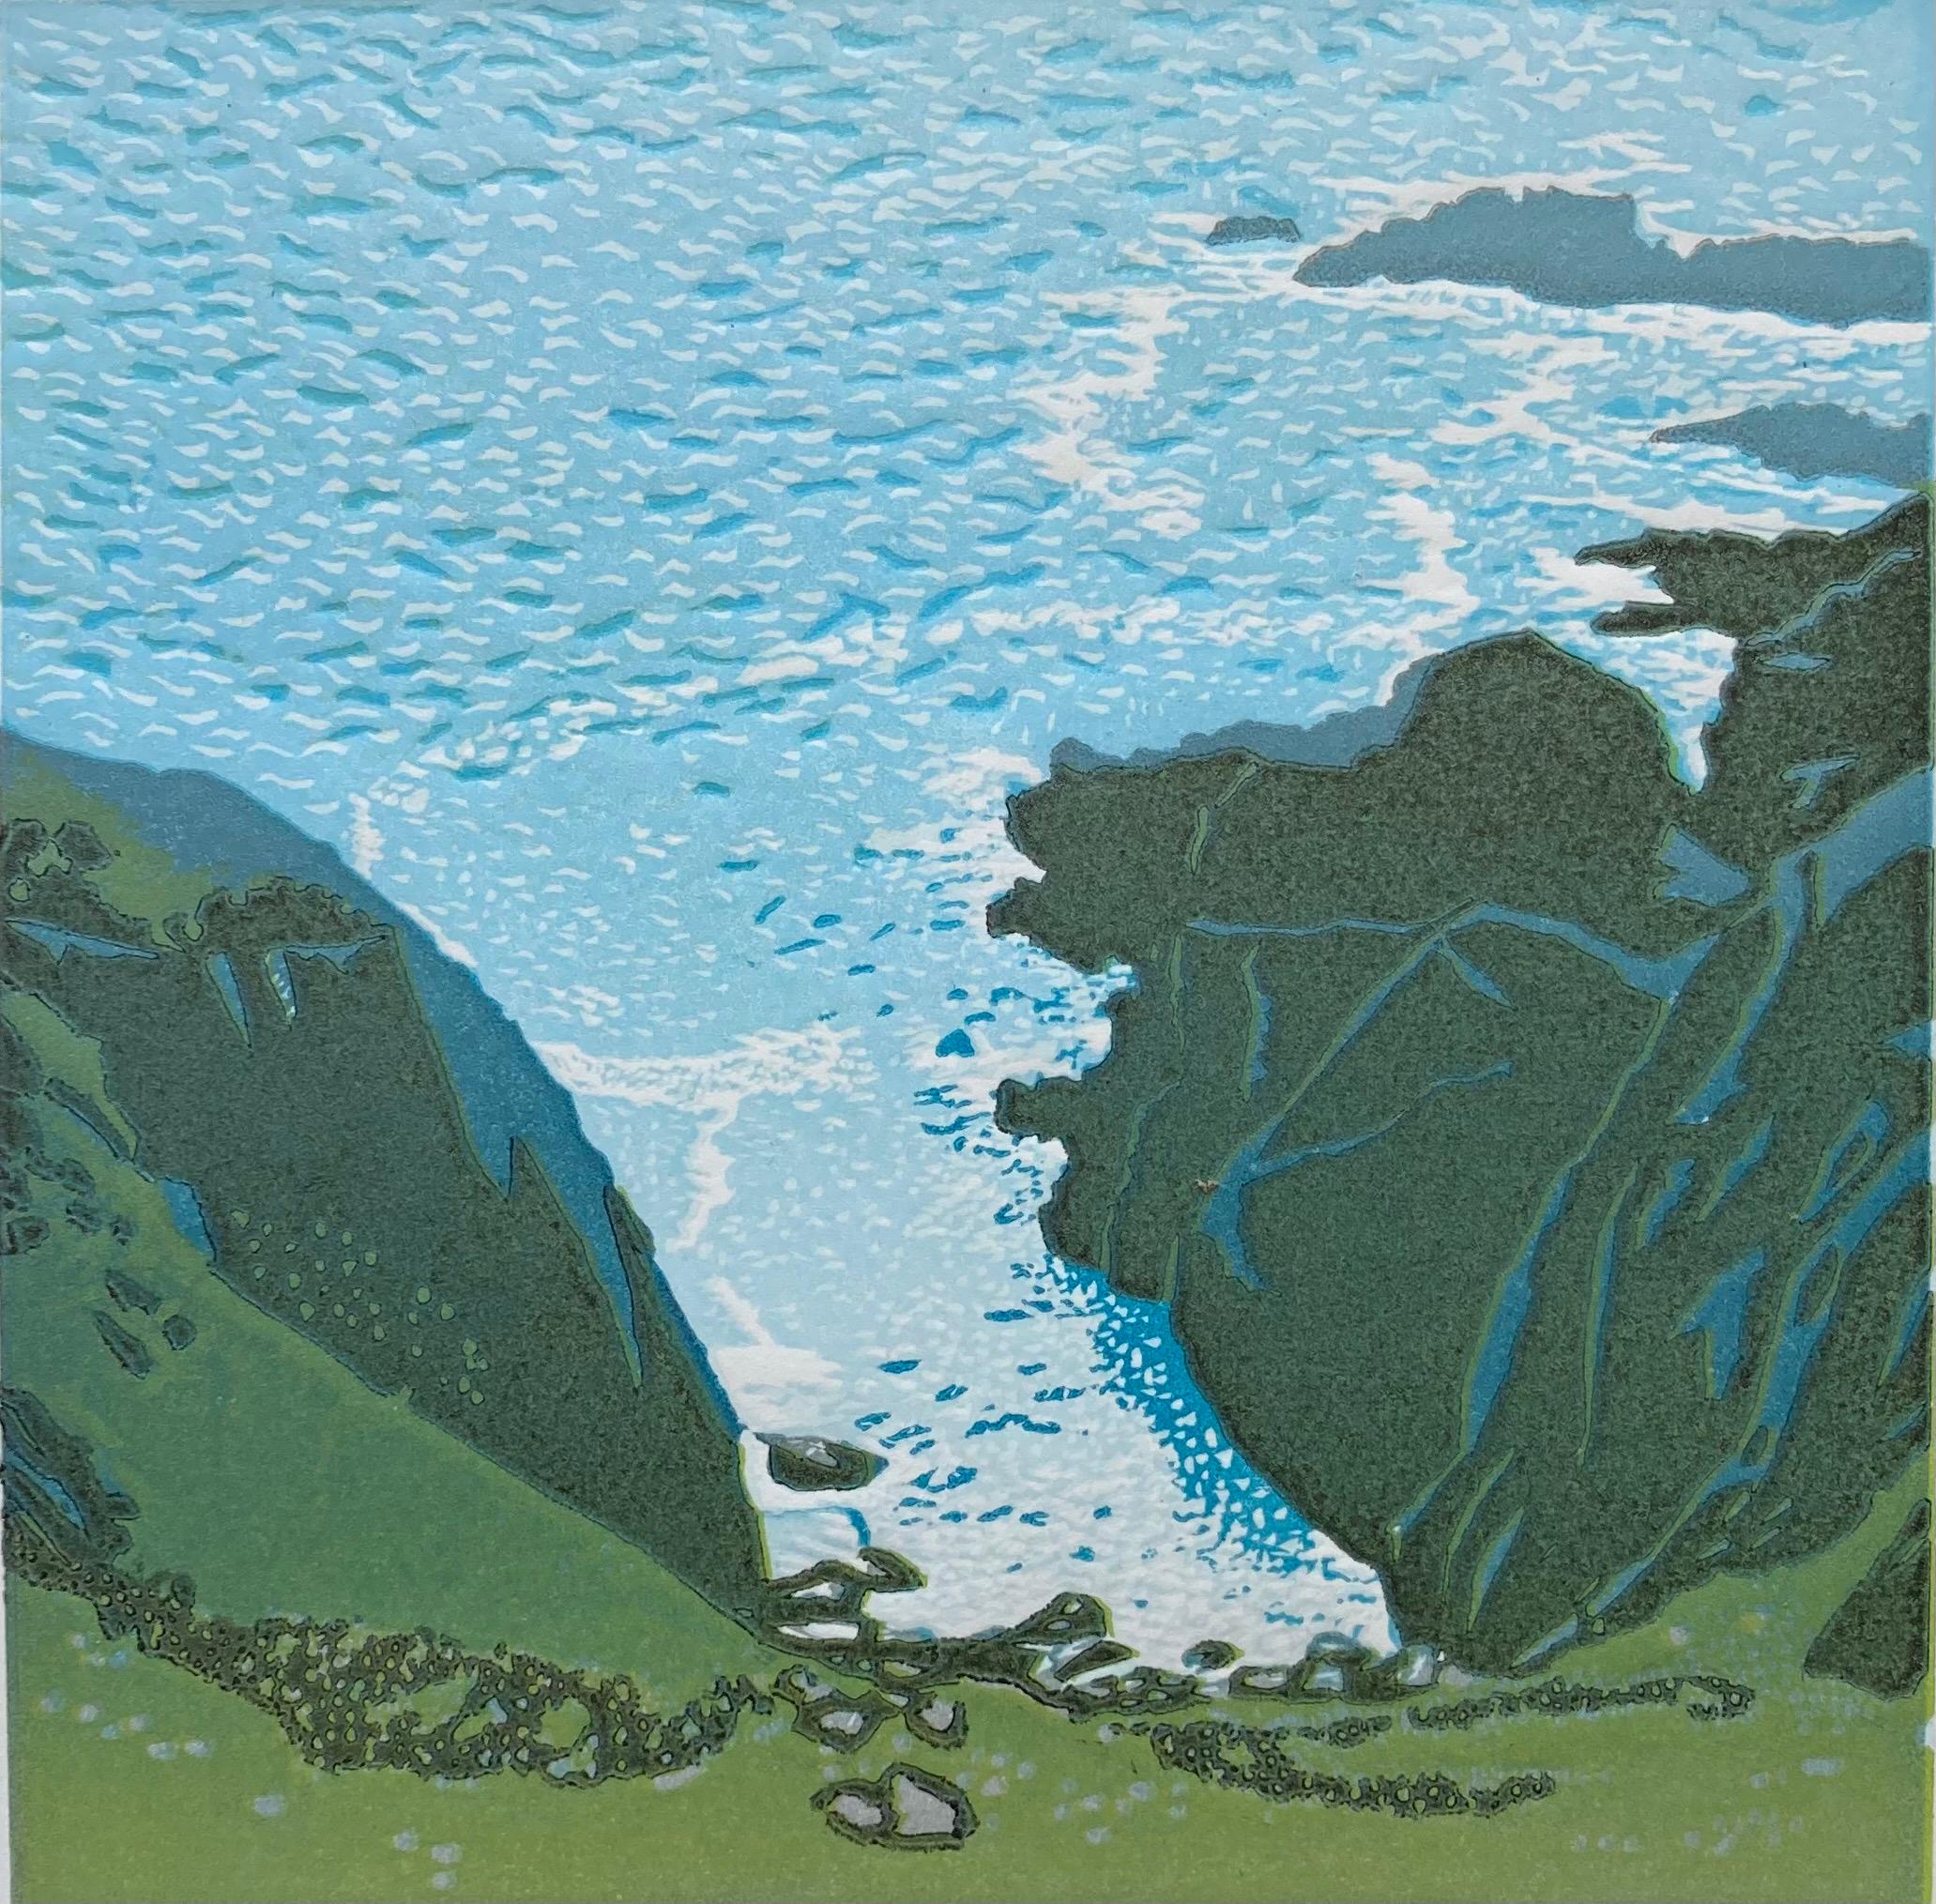 Ann Burnham  Landscape Print - Above the Sea by Ann Burnham, Limited edition print, coastal art, landscape 